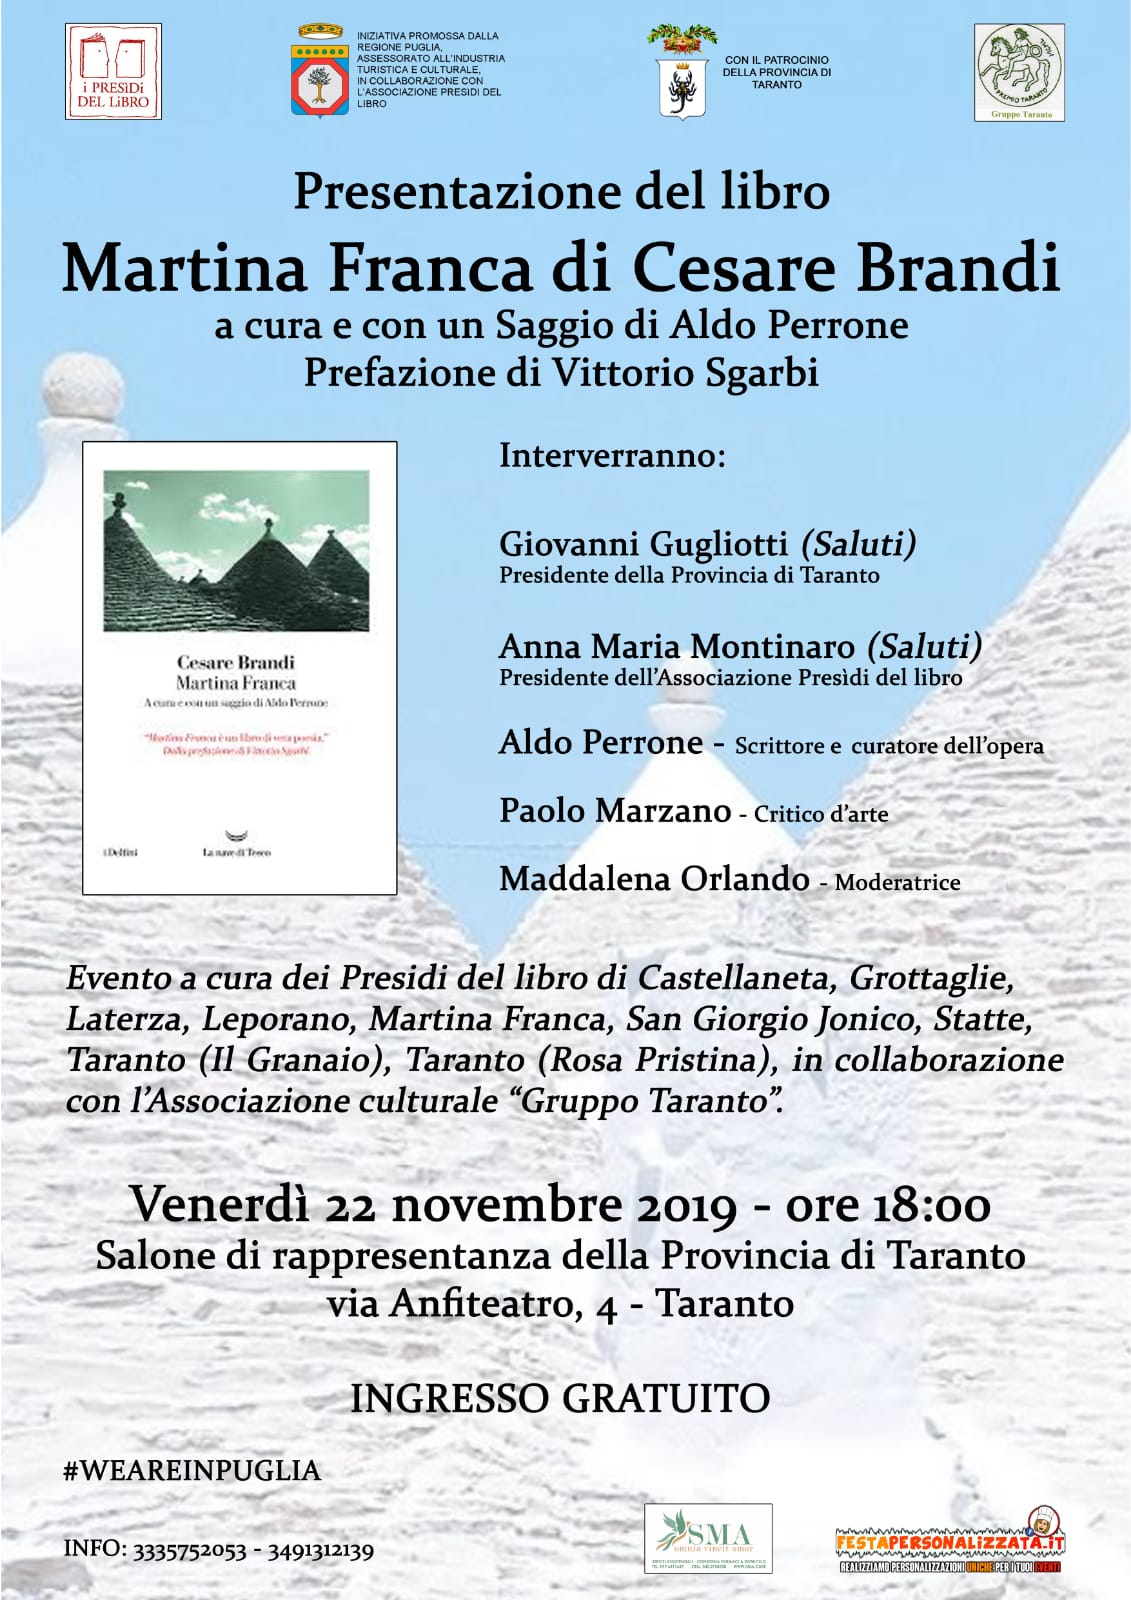 TARANTO. Presentazione del libro “Martina Franca” di Cesare Brandi